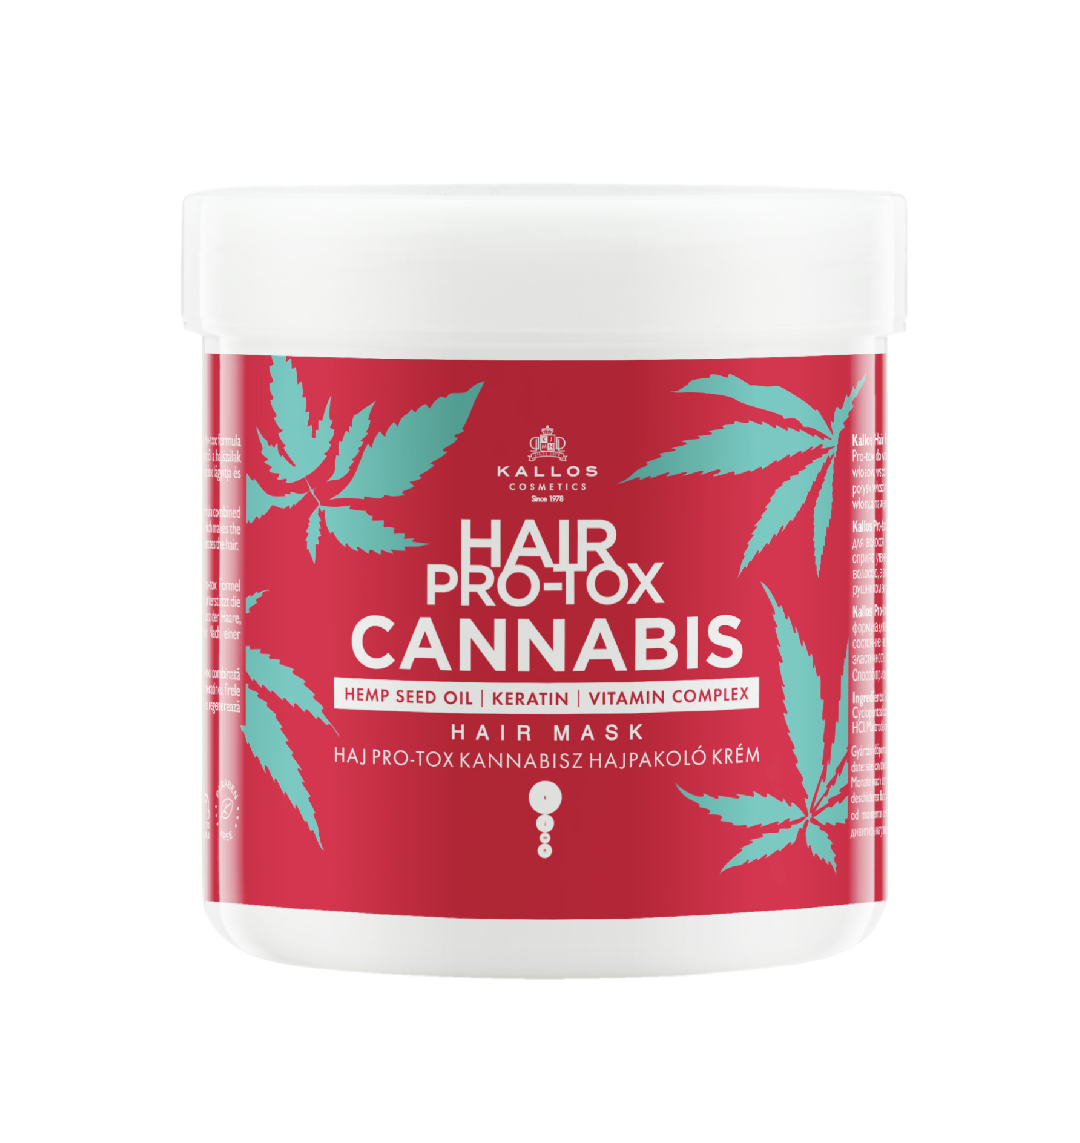 Kallos hair pro-tox cannabis hair wrap cream /in 3 sizes/